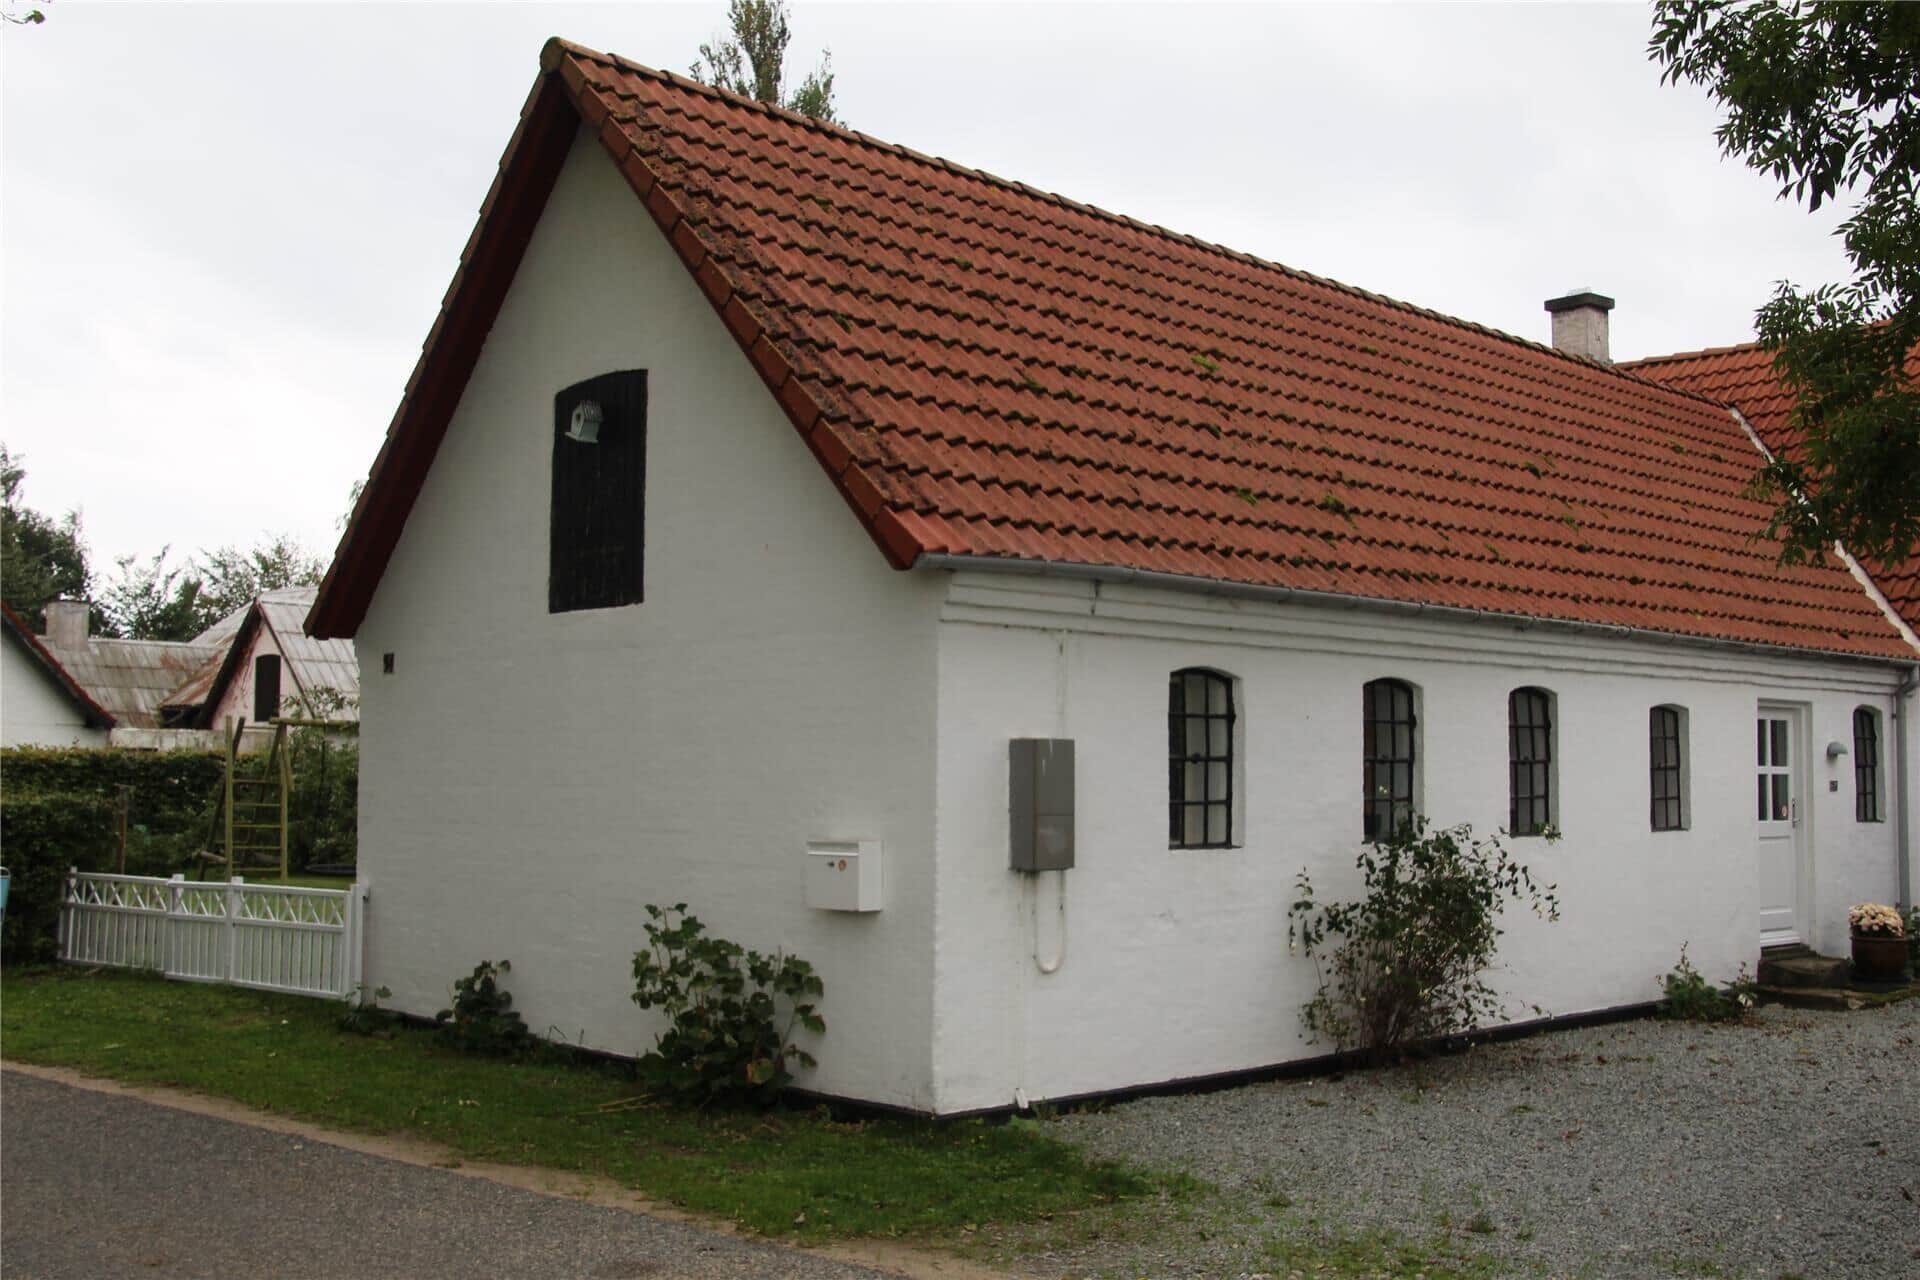 Bild 0-3 Ferienhaus M65428, Nabben 34, DK - 5683 Haarby